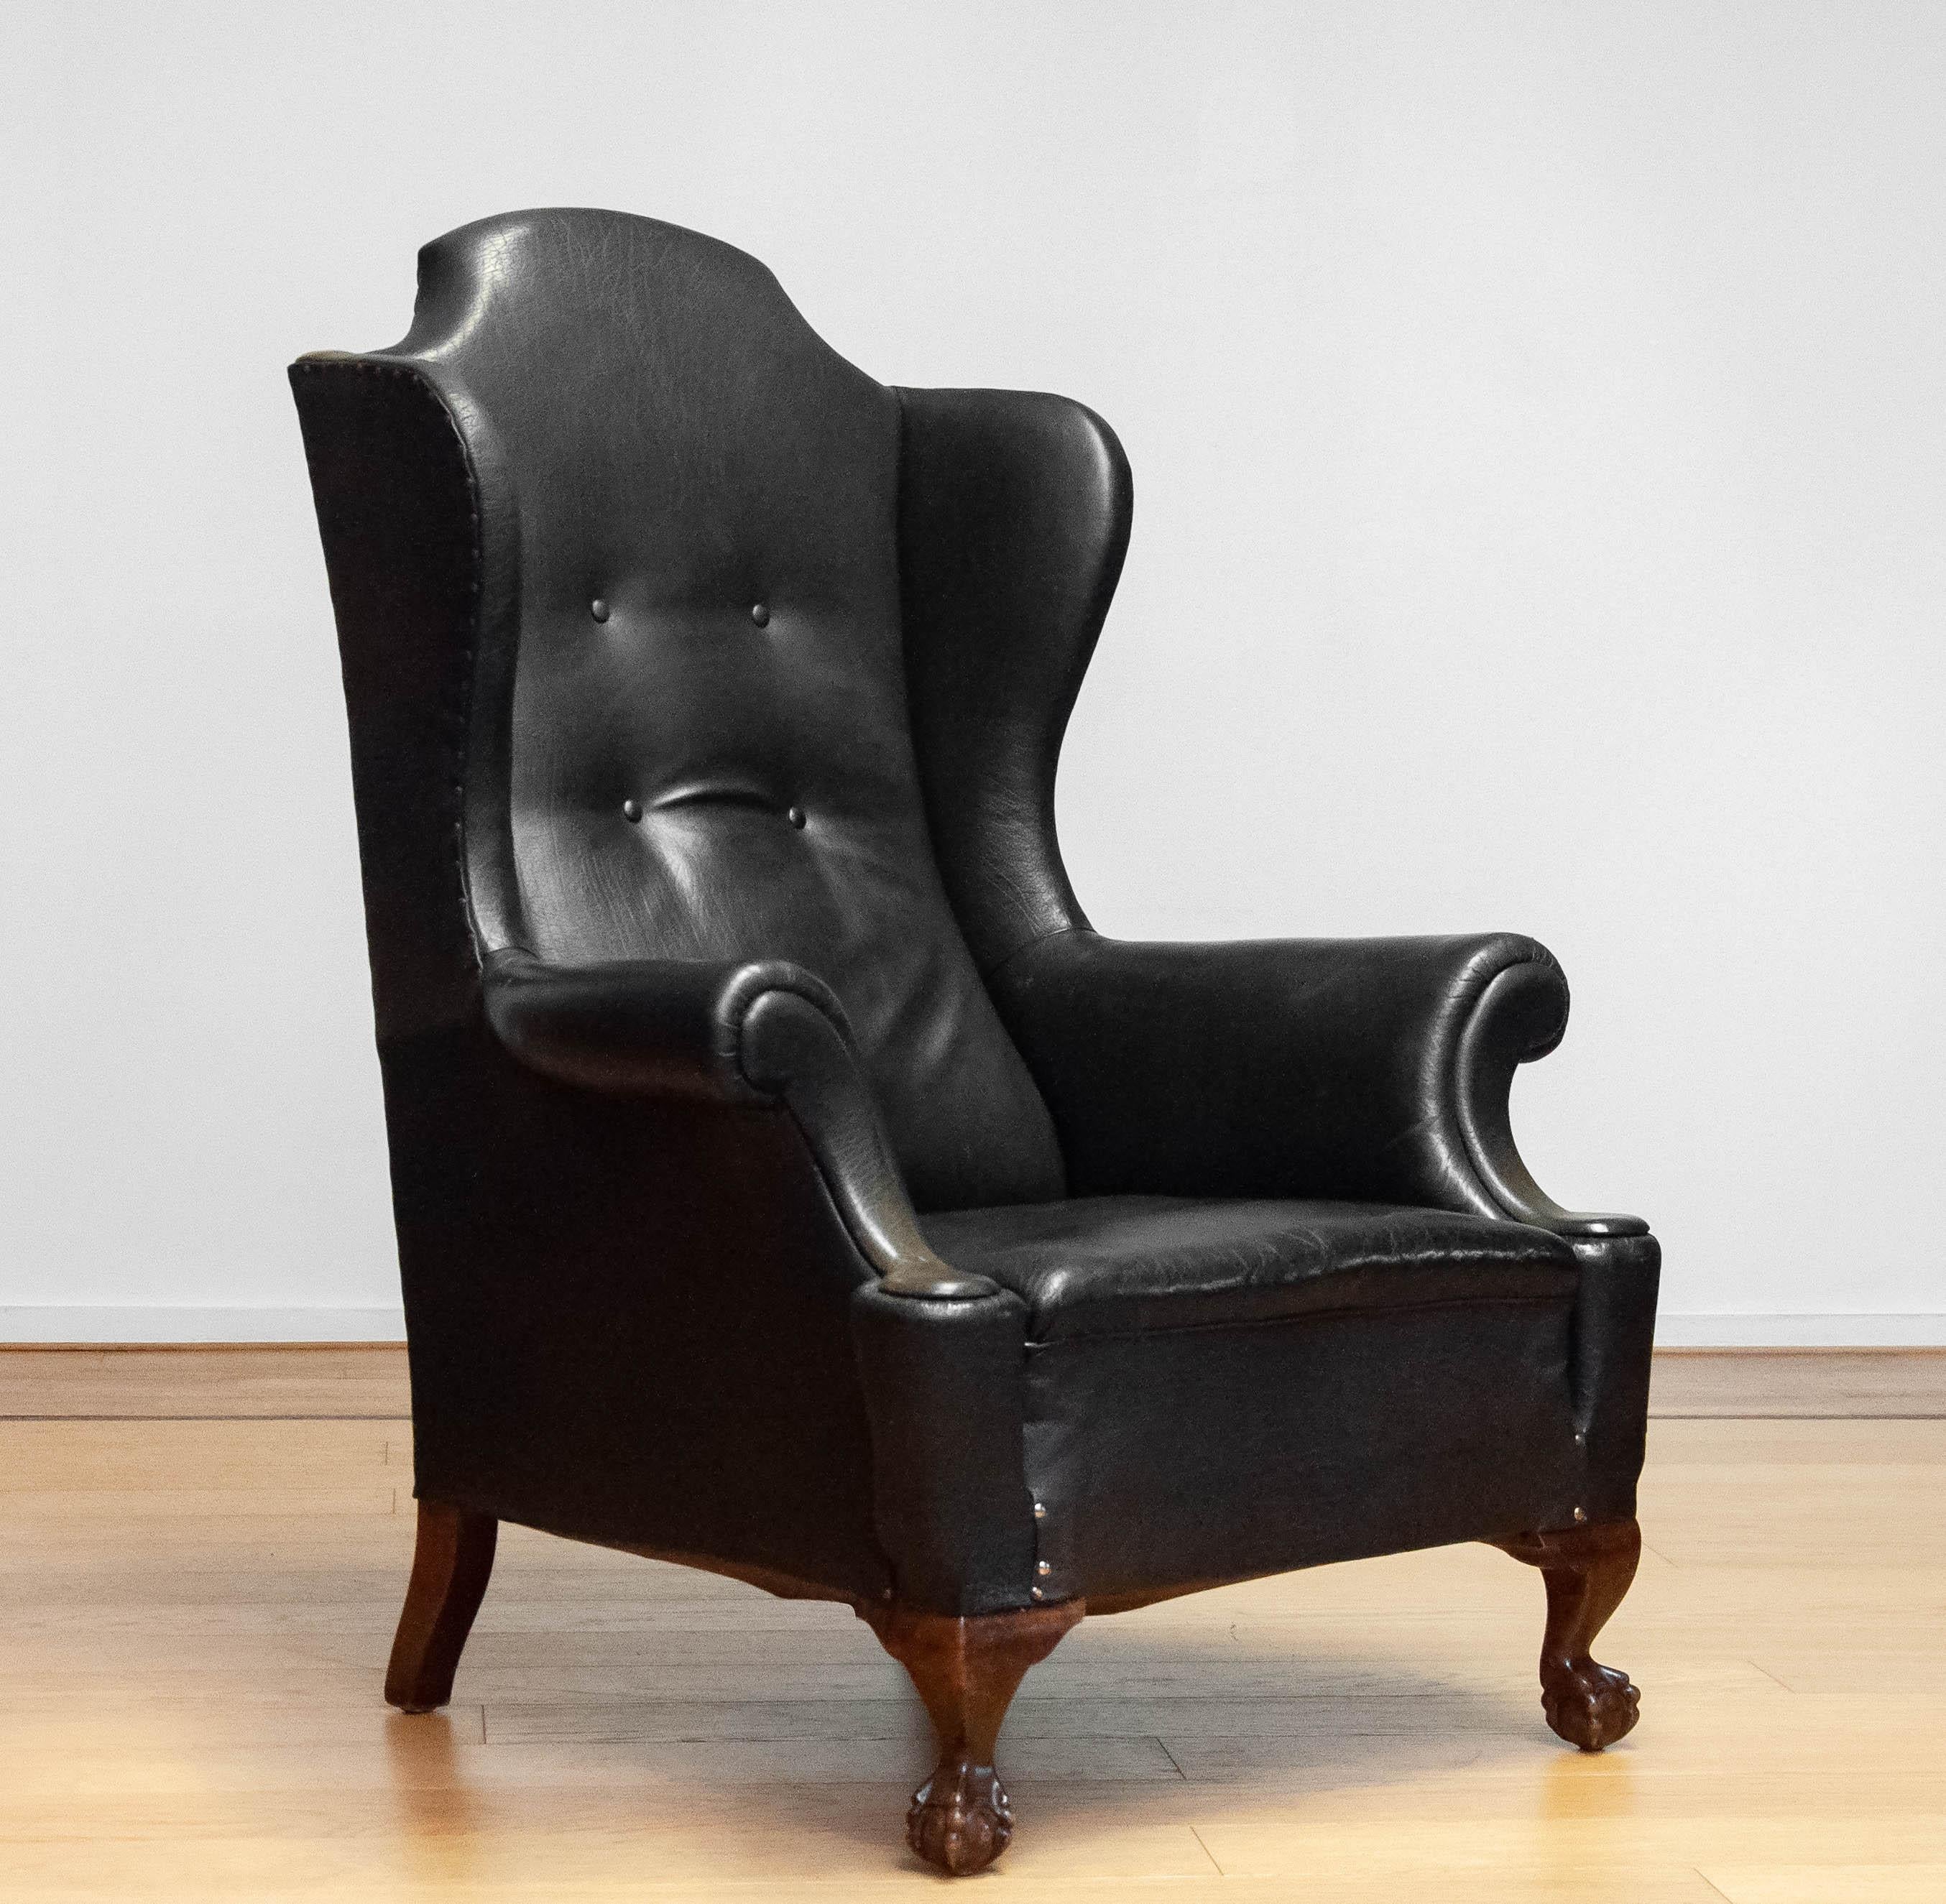 Très décorative et grande chaise à oreilles en cuir noir 'Thomas Chappendale style' de la fin du 19ème siècle. Au cours de sa vie, des morceaux de cuir ont été remplacés, ce qui confère à cette chaise un caractère magnifique et en fait un véritable